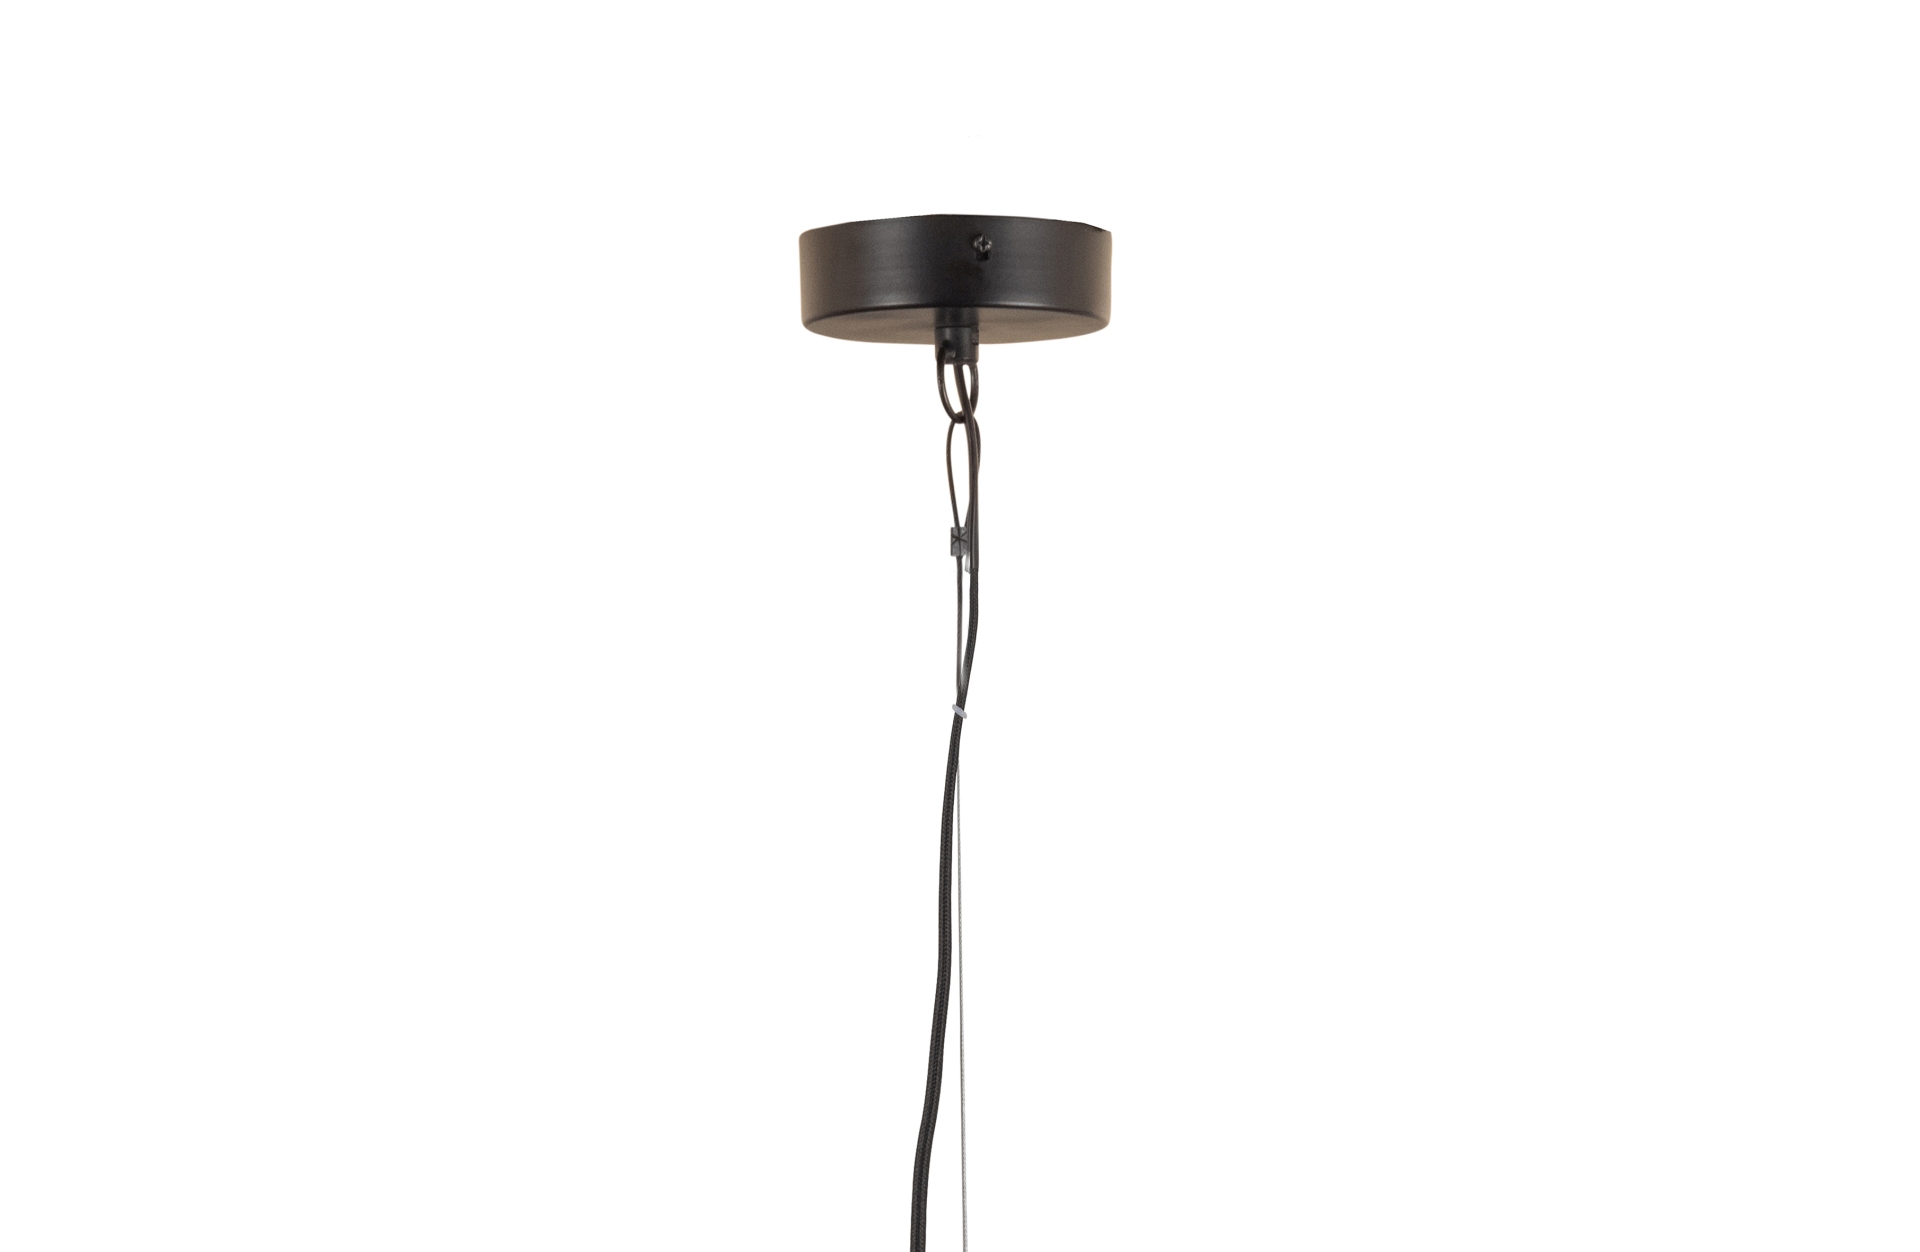 Die Hängelampe Esila überzeugt mit ihrem modernen Design und macht jeden Wohnbereich zu einem echten Hingucker. Gefertigt wurde die Lampe aus Metall, welches einen schwarzen Farbton besitzt.